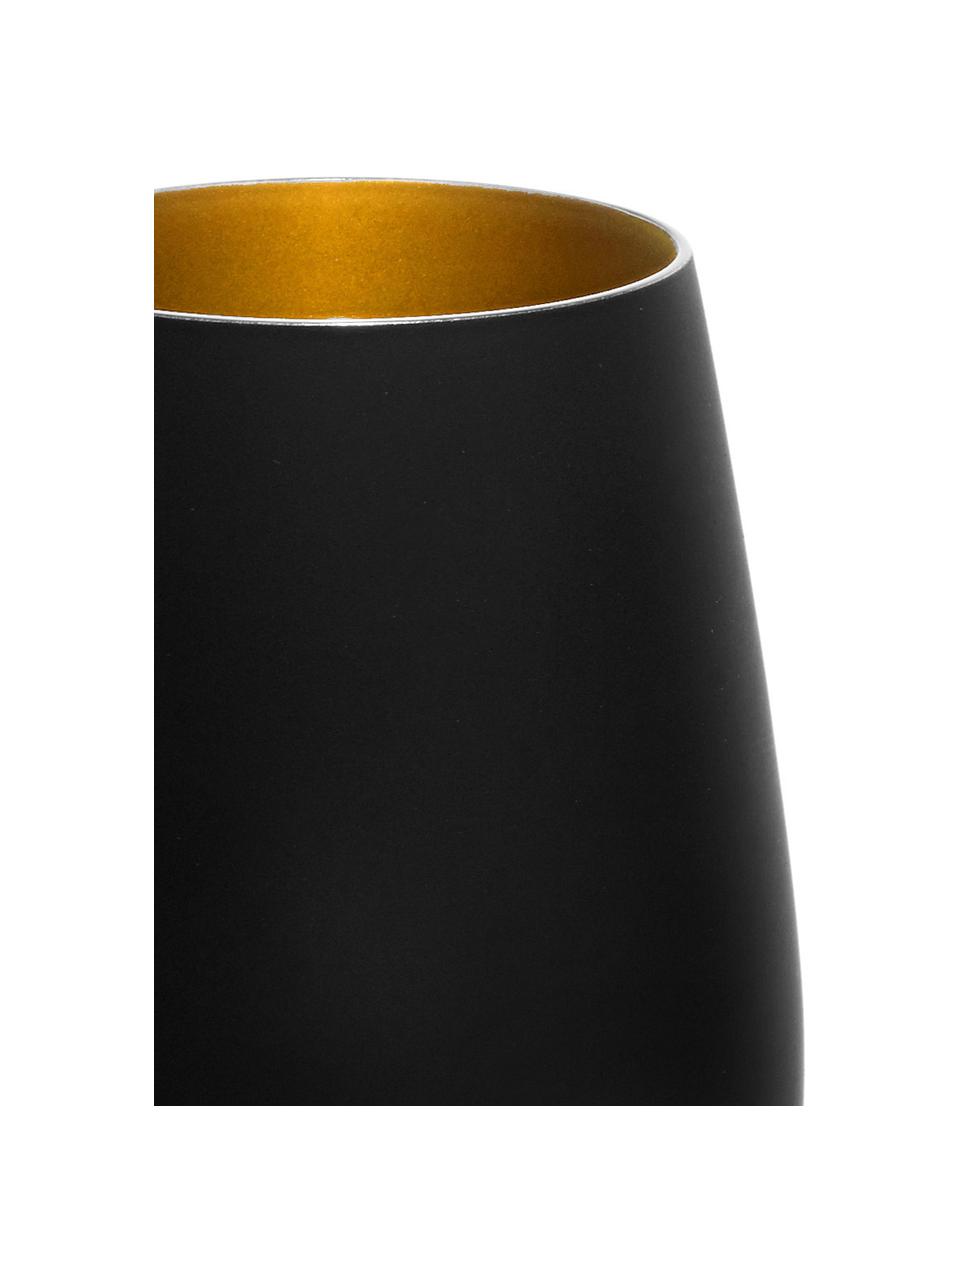 Kristall-Longdrinkgläser Elements in Schwarz/Gold, 6 Stück, Kristallglas, beschichtet, Schwarz, Messingfarben, Ø 9 x H 12 cm